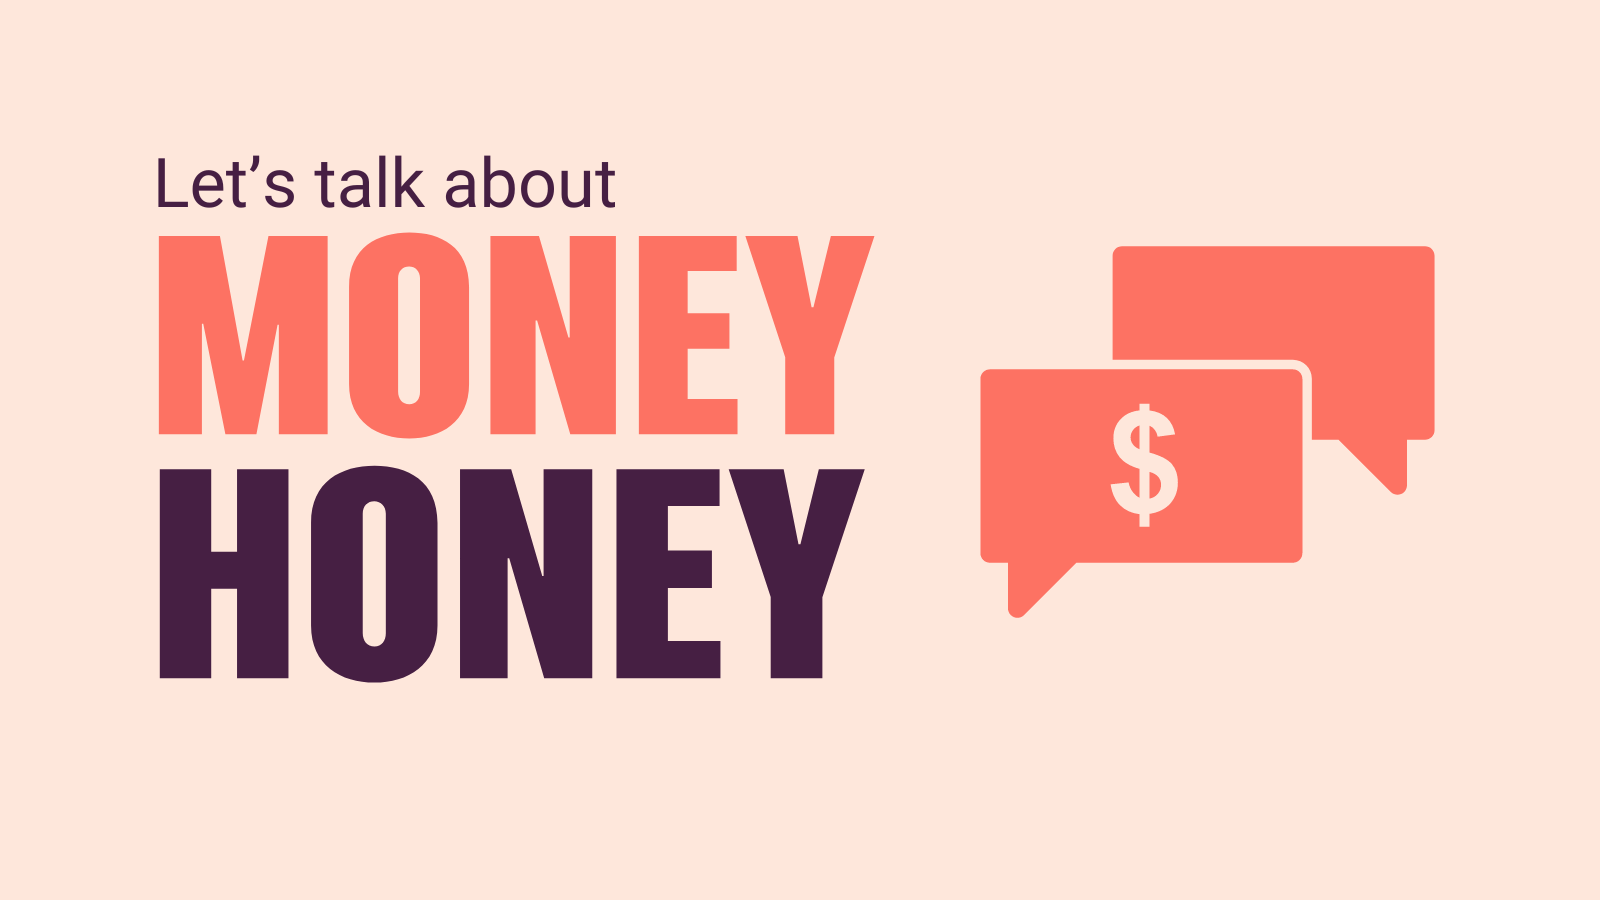 Let's talk about money, honey